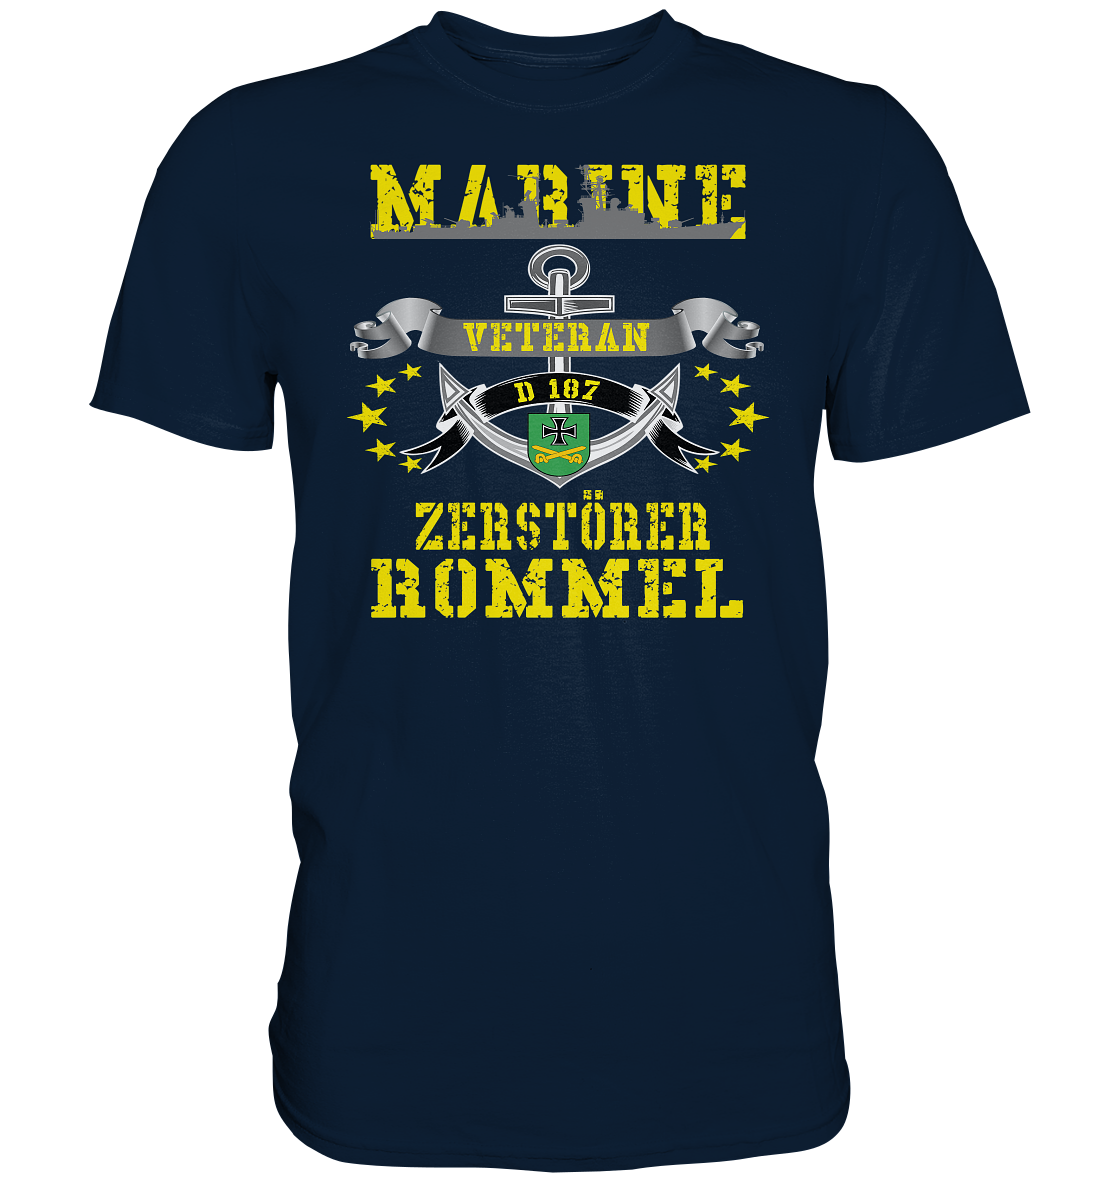 Zerstörer D187 ROMMEL Marine Veteran - Premium Shirt